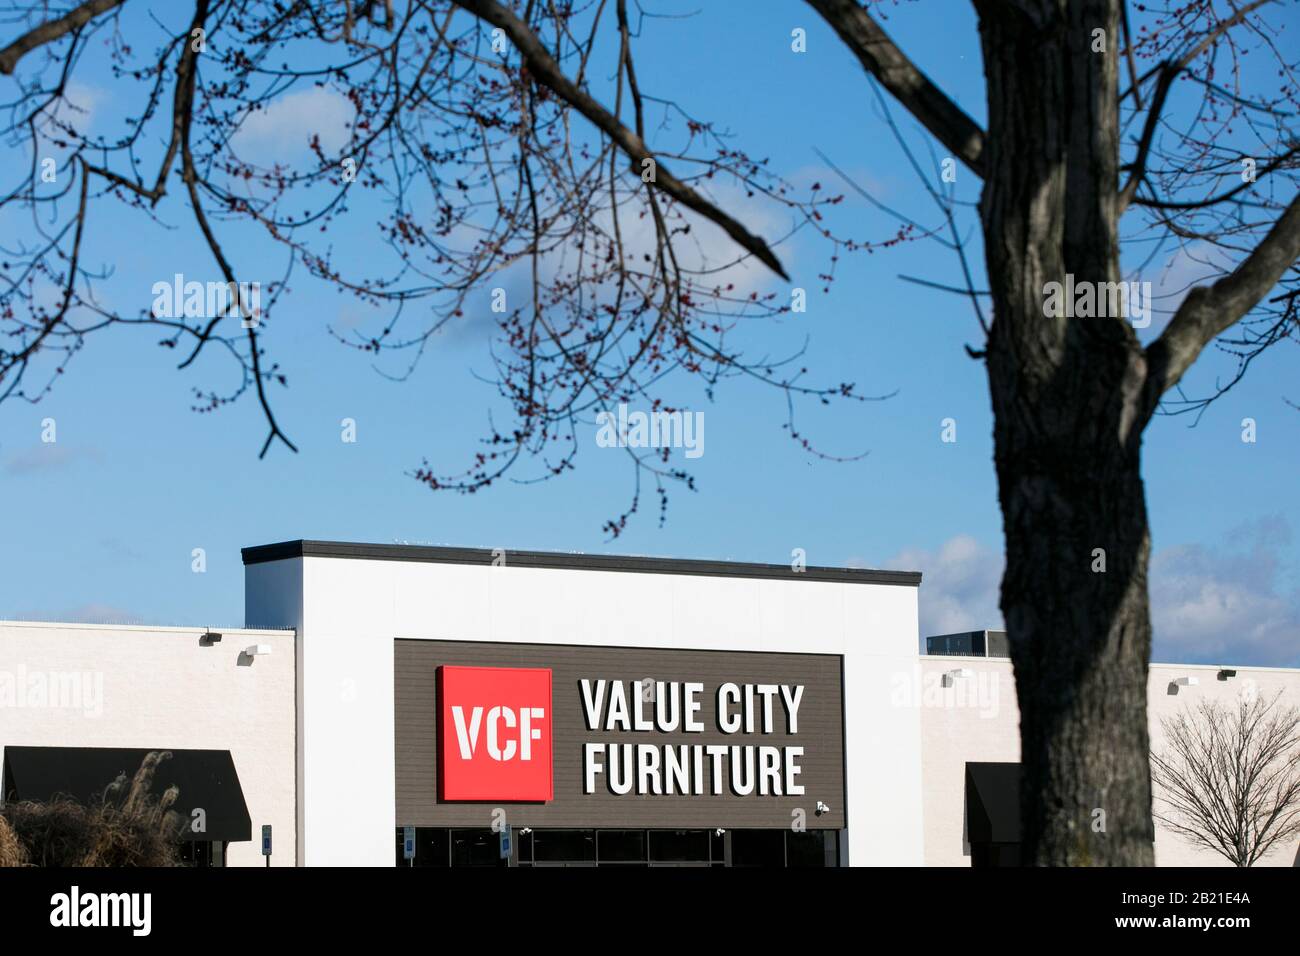 Un logo à l'extérieur d'un magasin de détail Value City Furniture (VCF) situé à Waldorf, dans le Maryland, le 27 février 2020. Banque D'Images